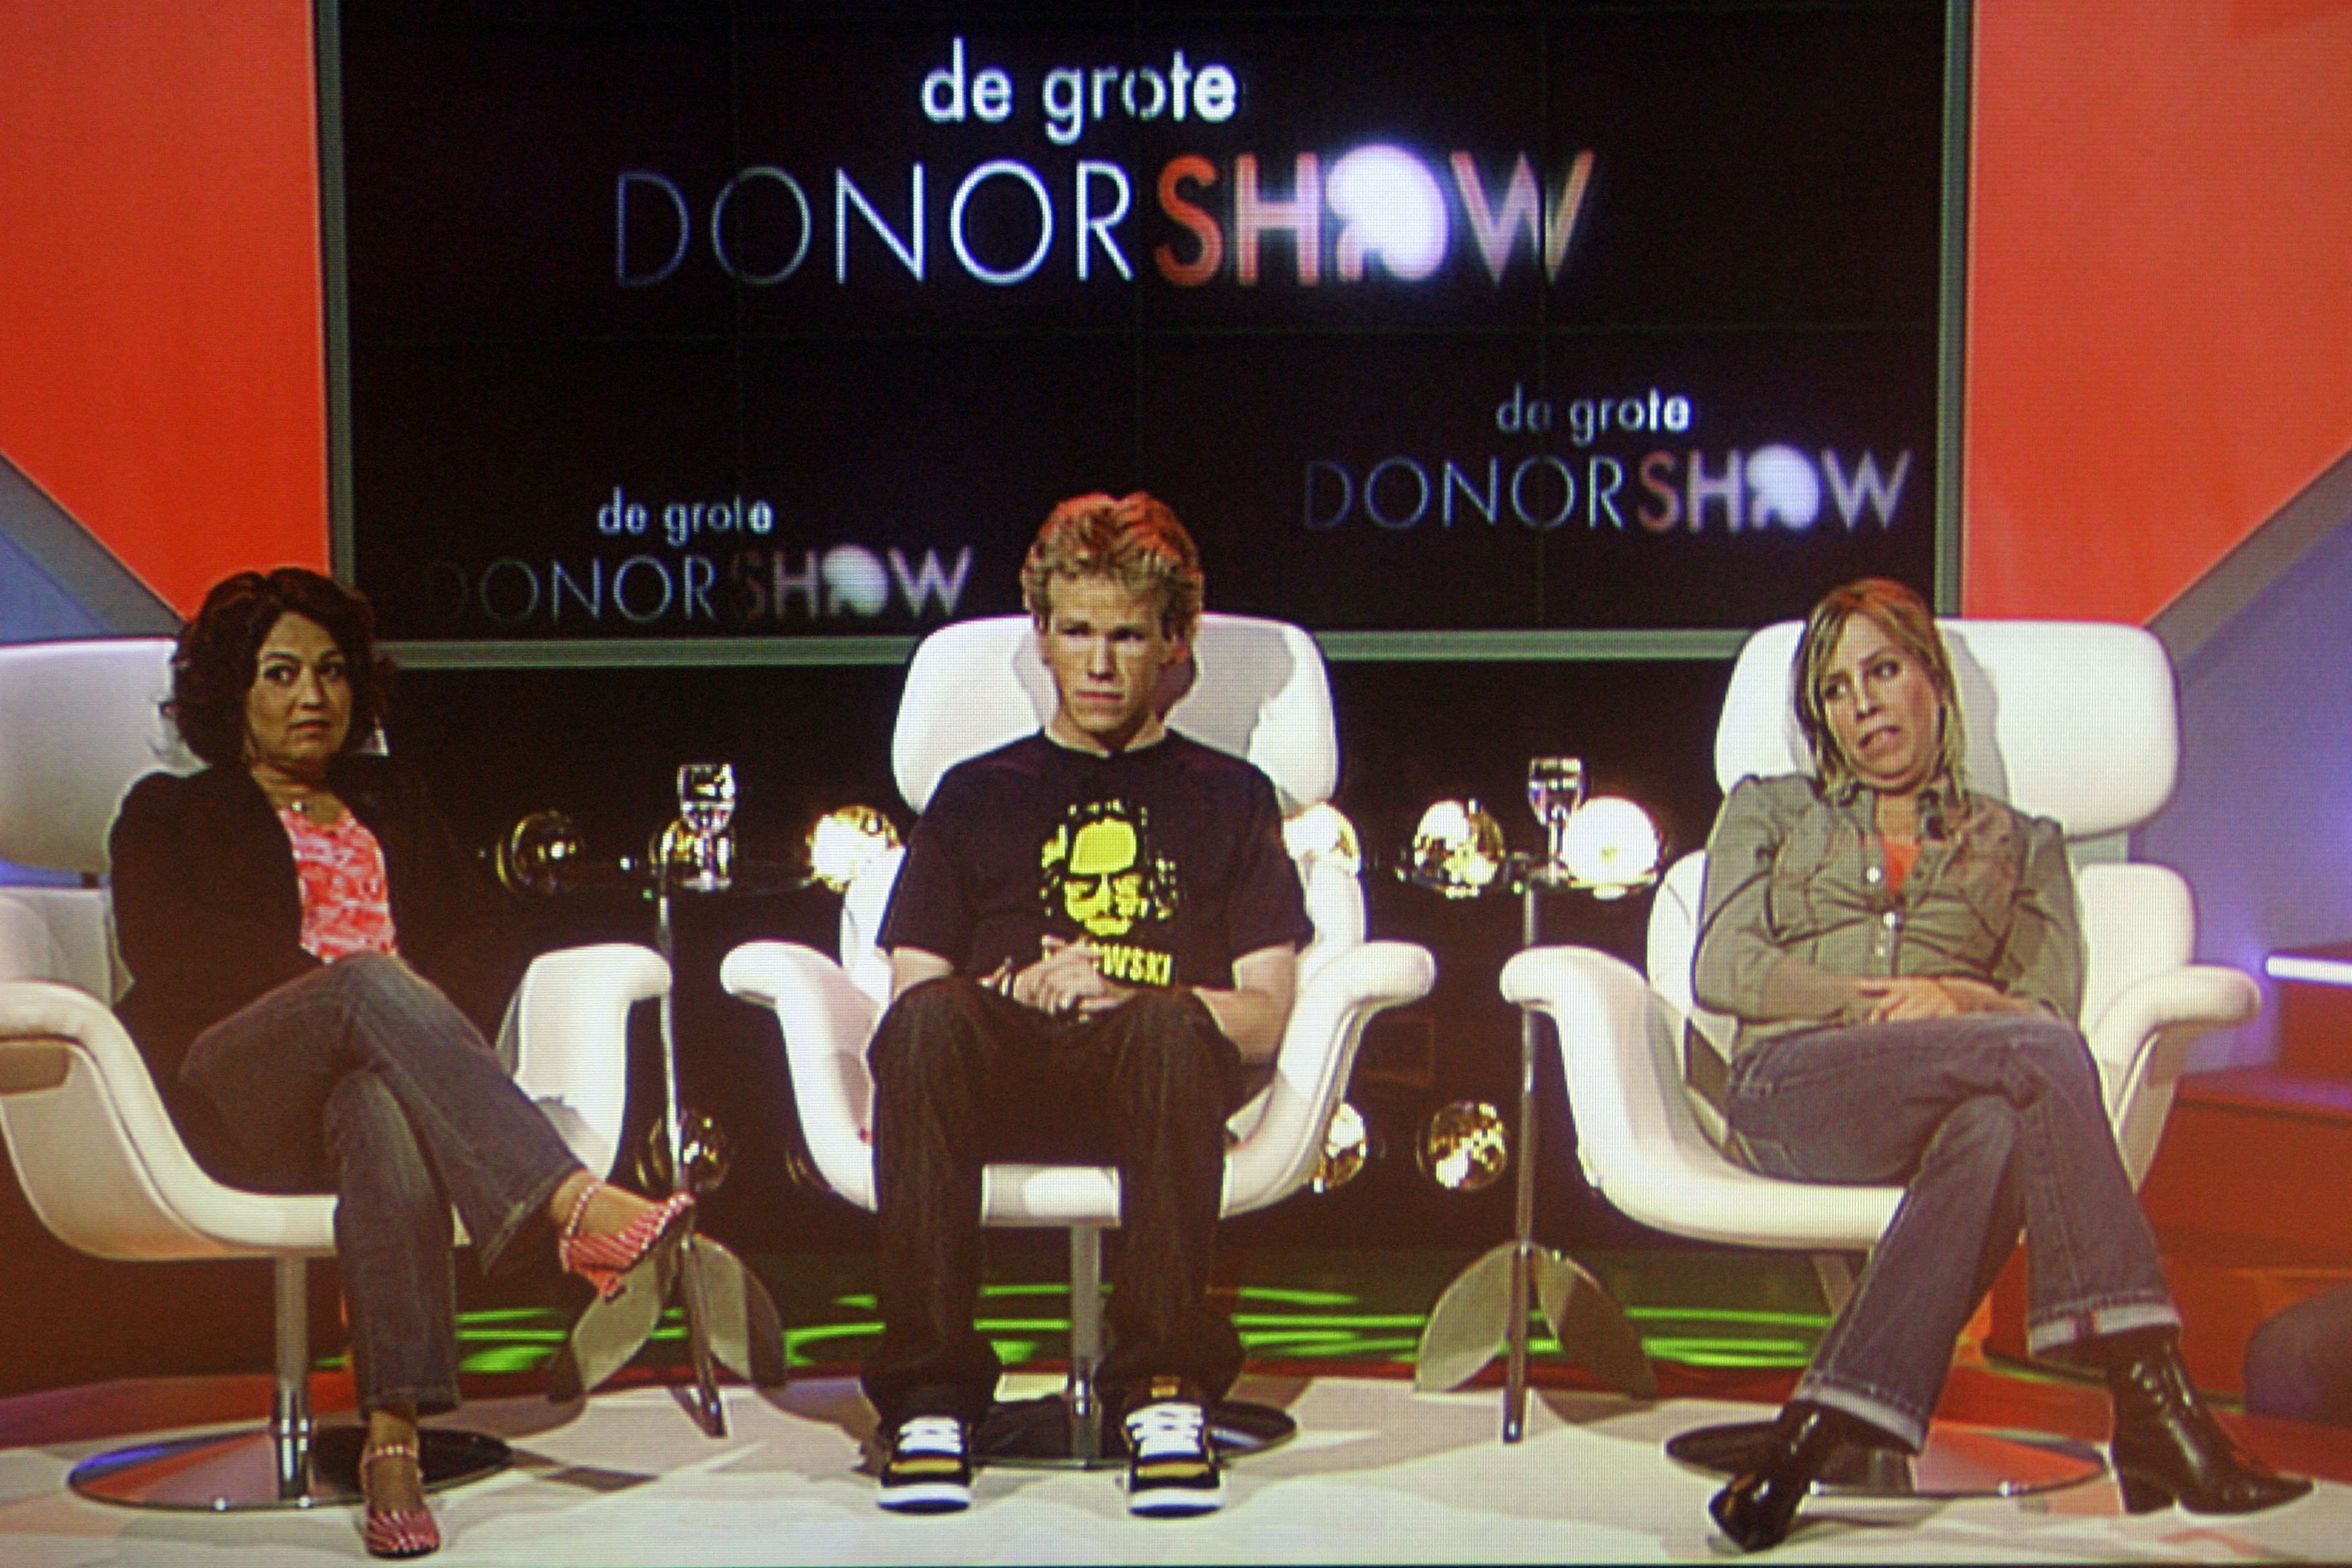 Учасники Big Donor Show, 2007 рік. Фото: VINCENT JANNINK / ANP / ANP via AFP